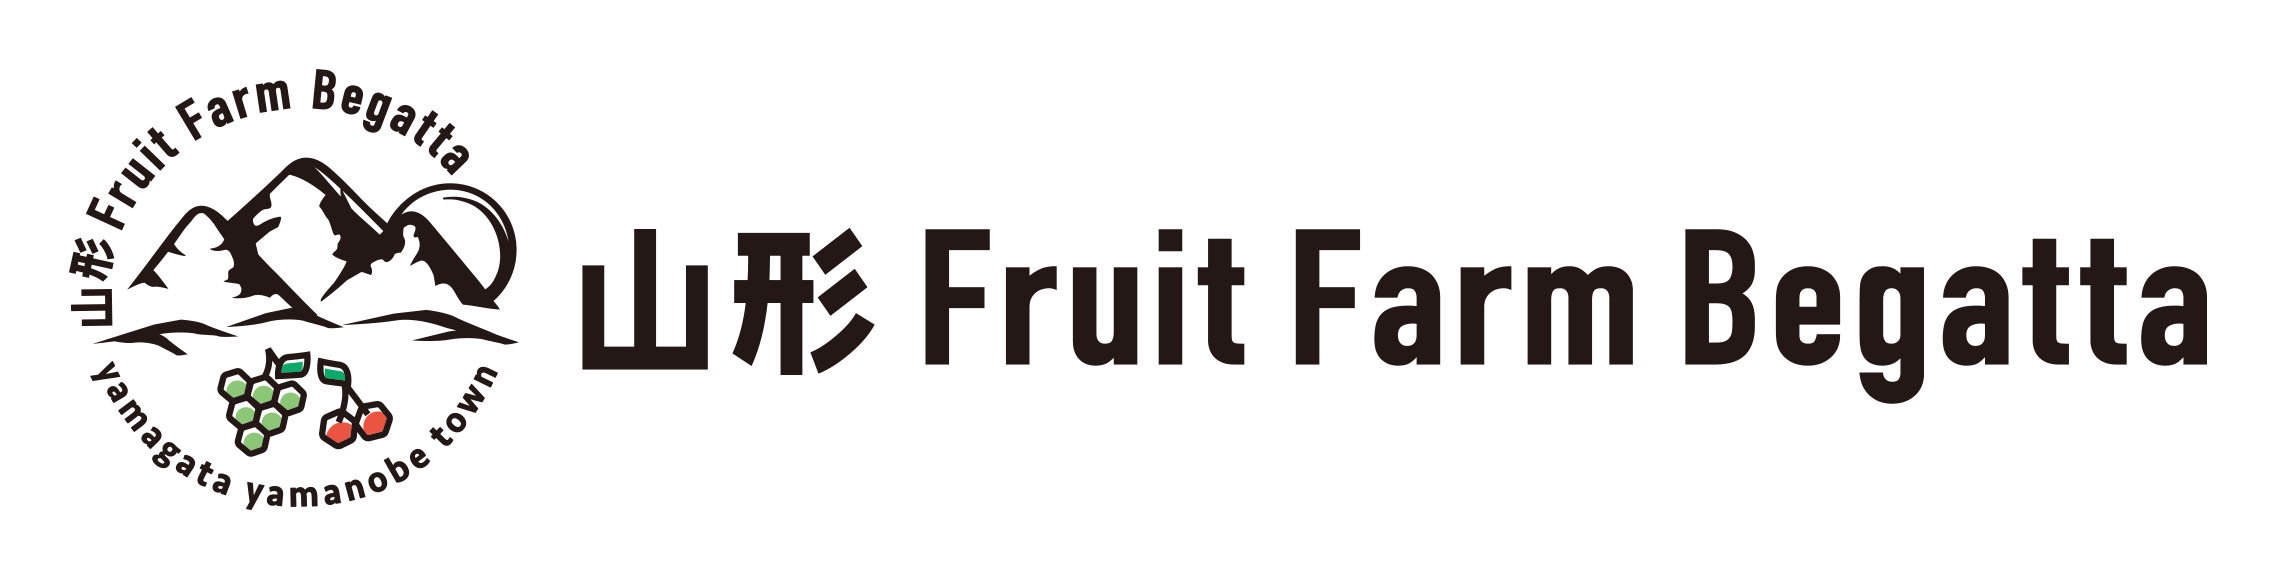 FruitFarmBegatta